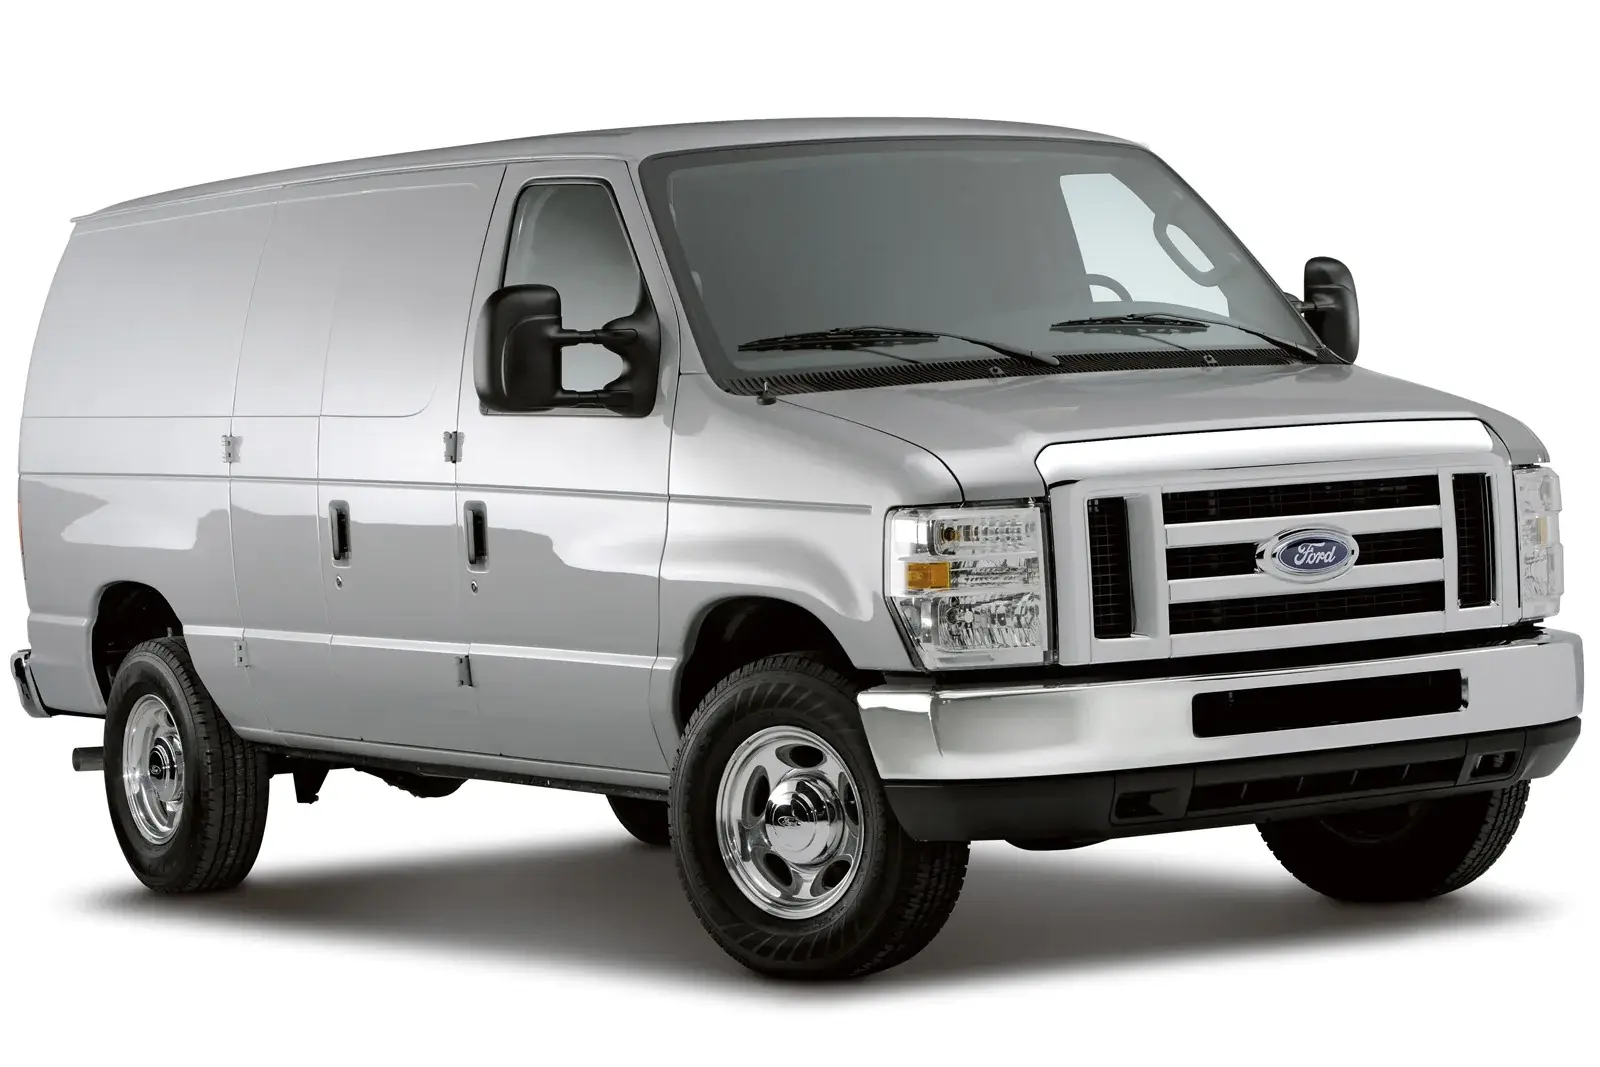 Ford E-Series Vans (Econoline/Club Wagon)